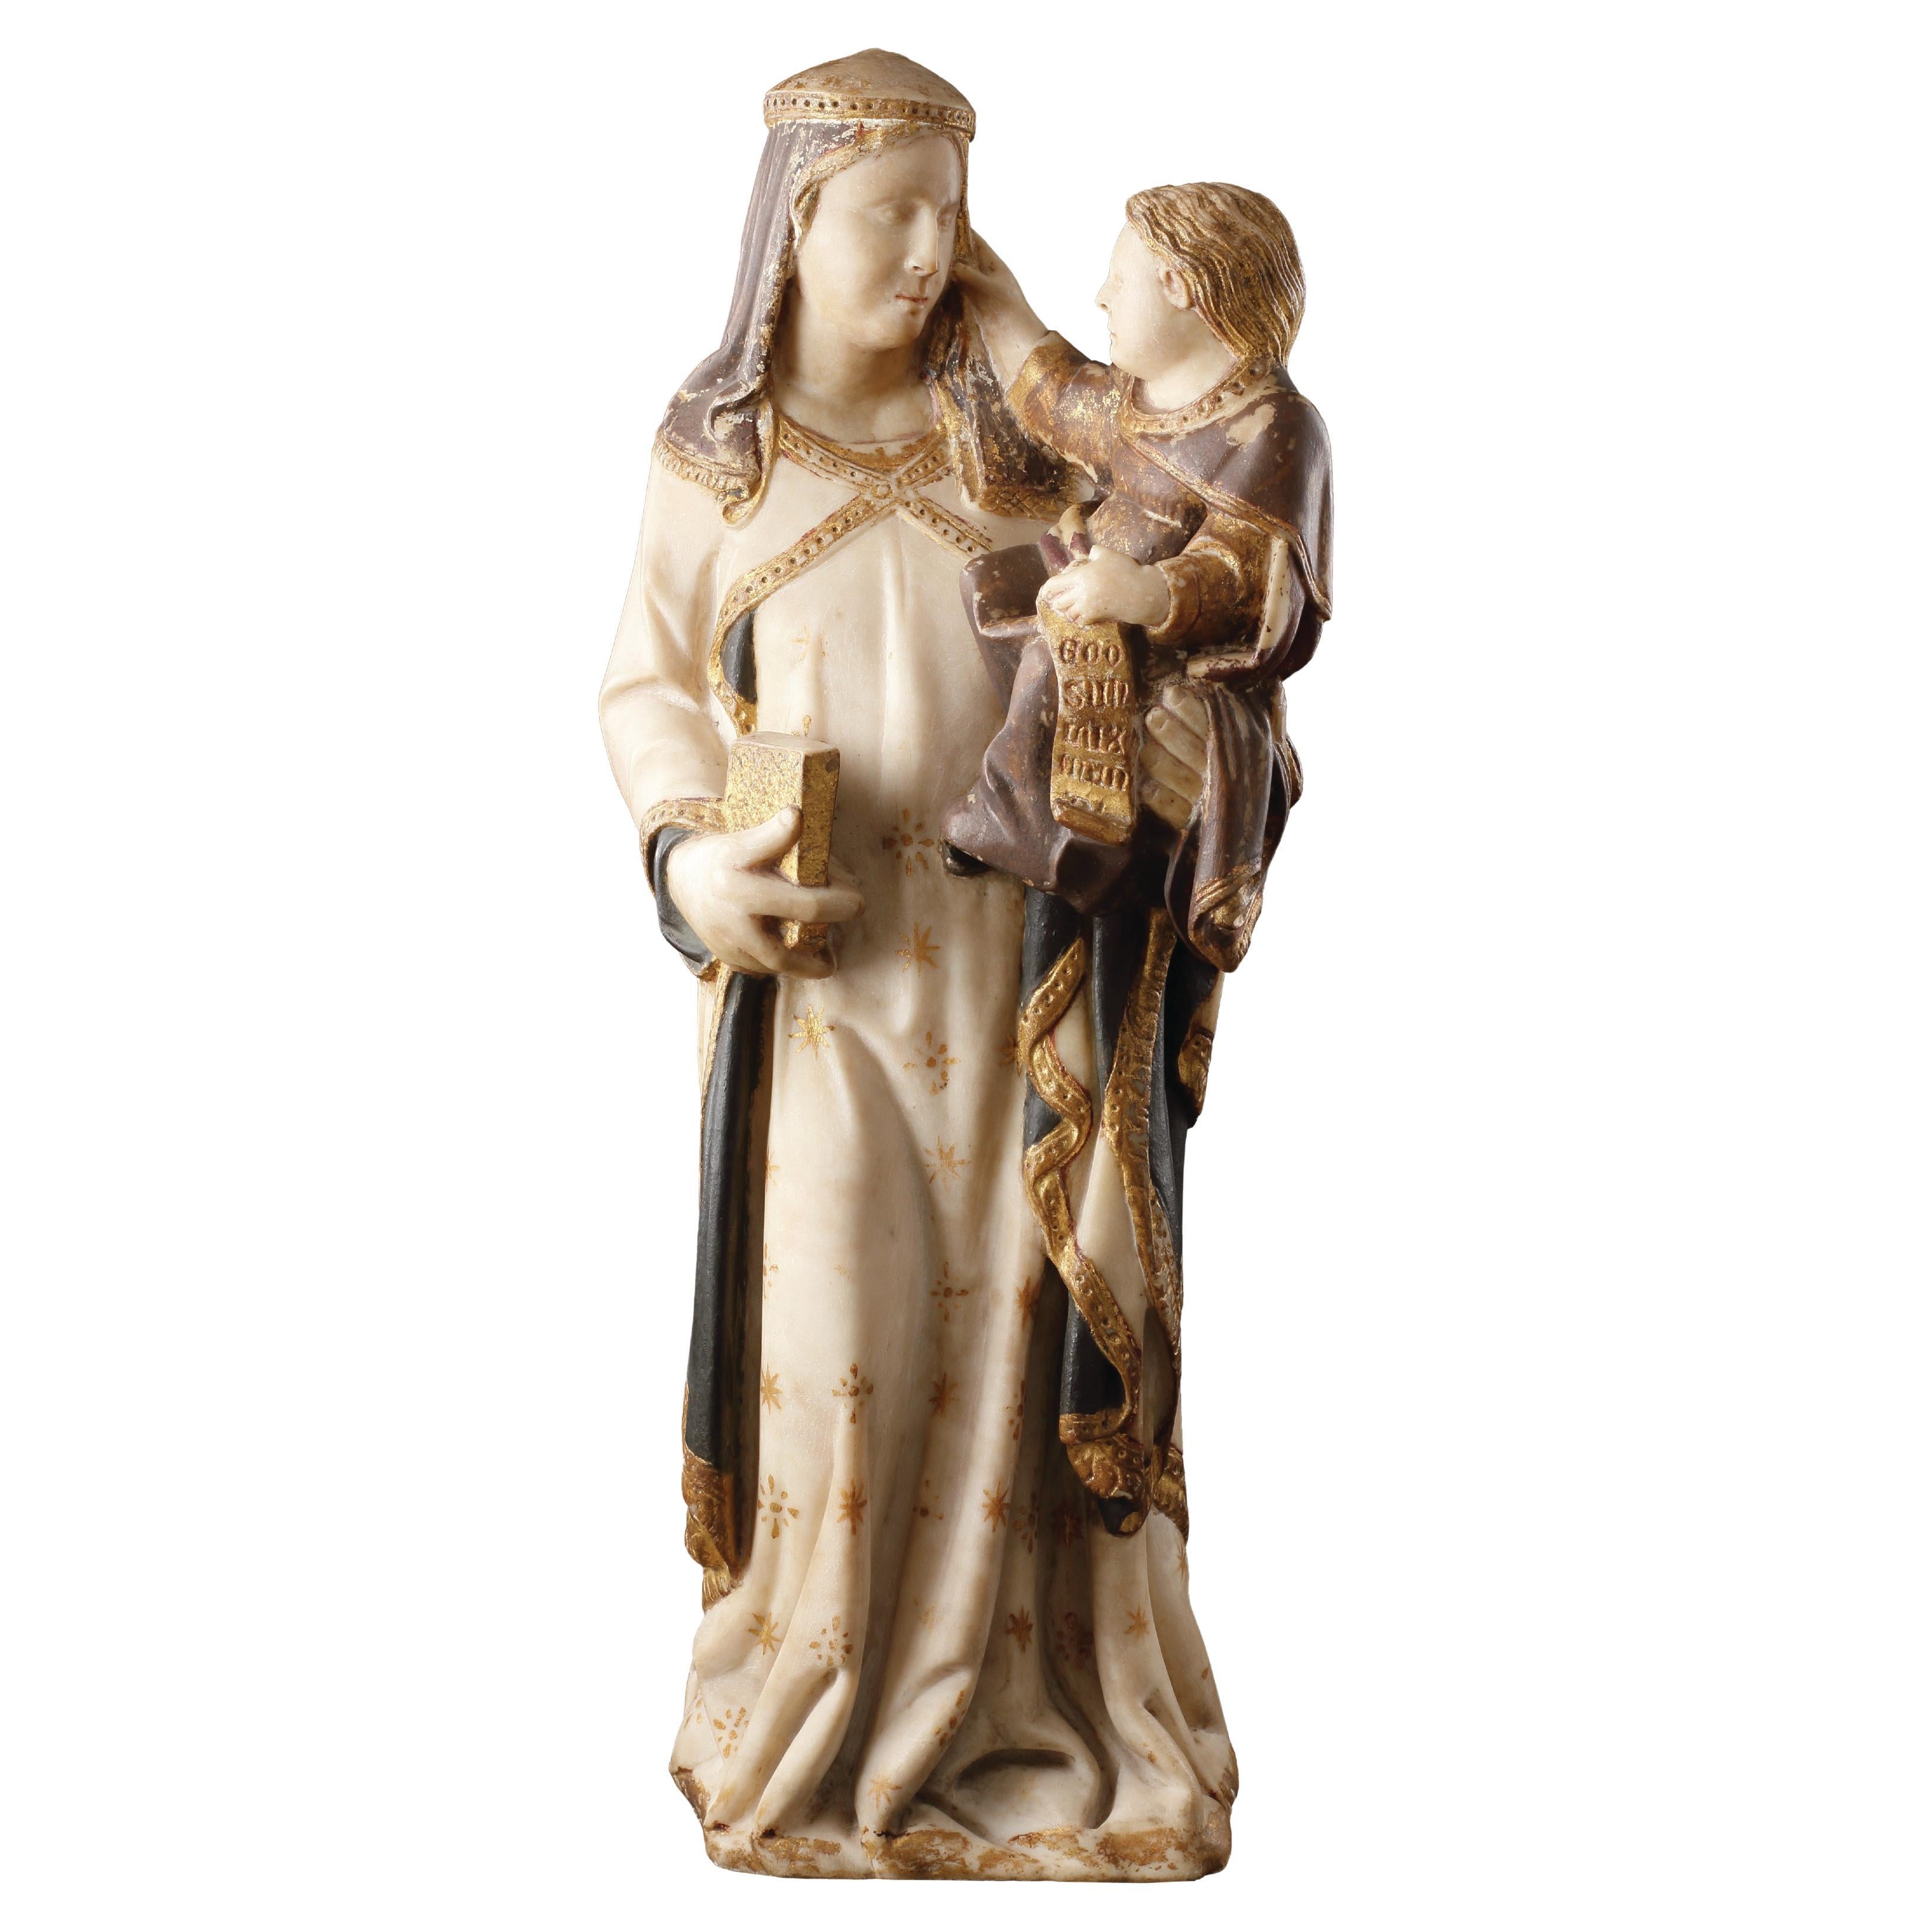 Groupe en marbre polychrome et parcellaire doré représentant la Vierge et l'Enfant